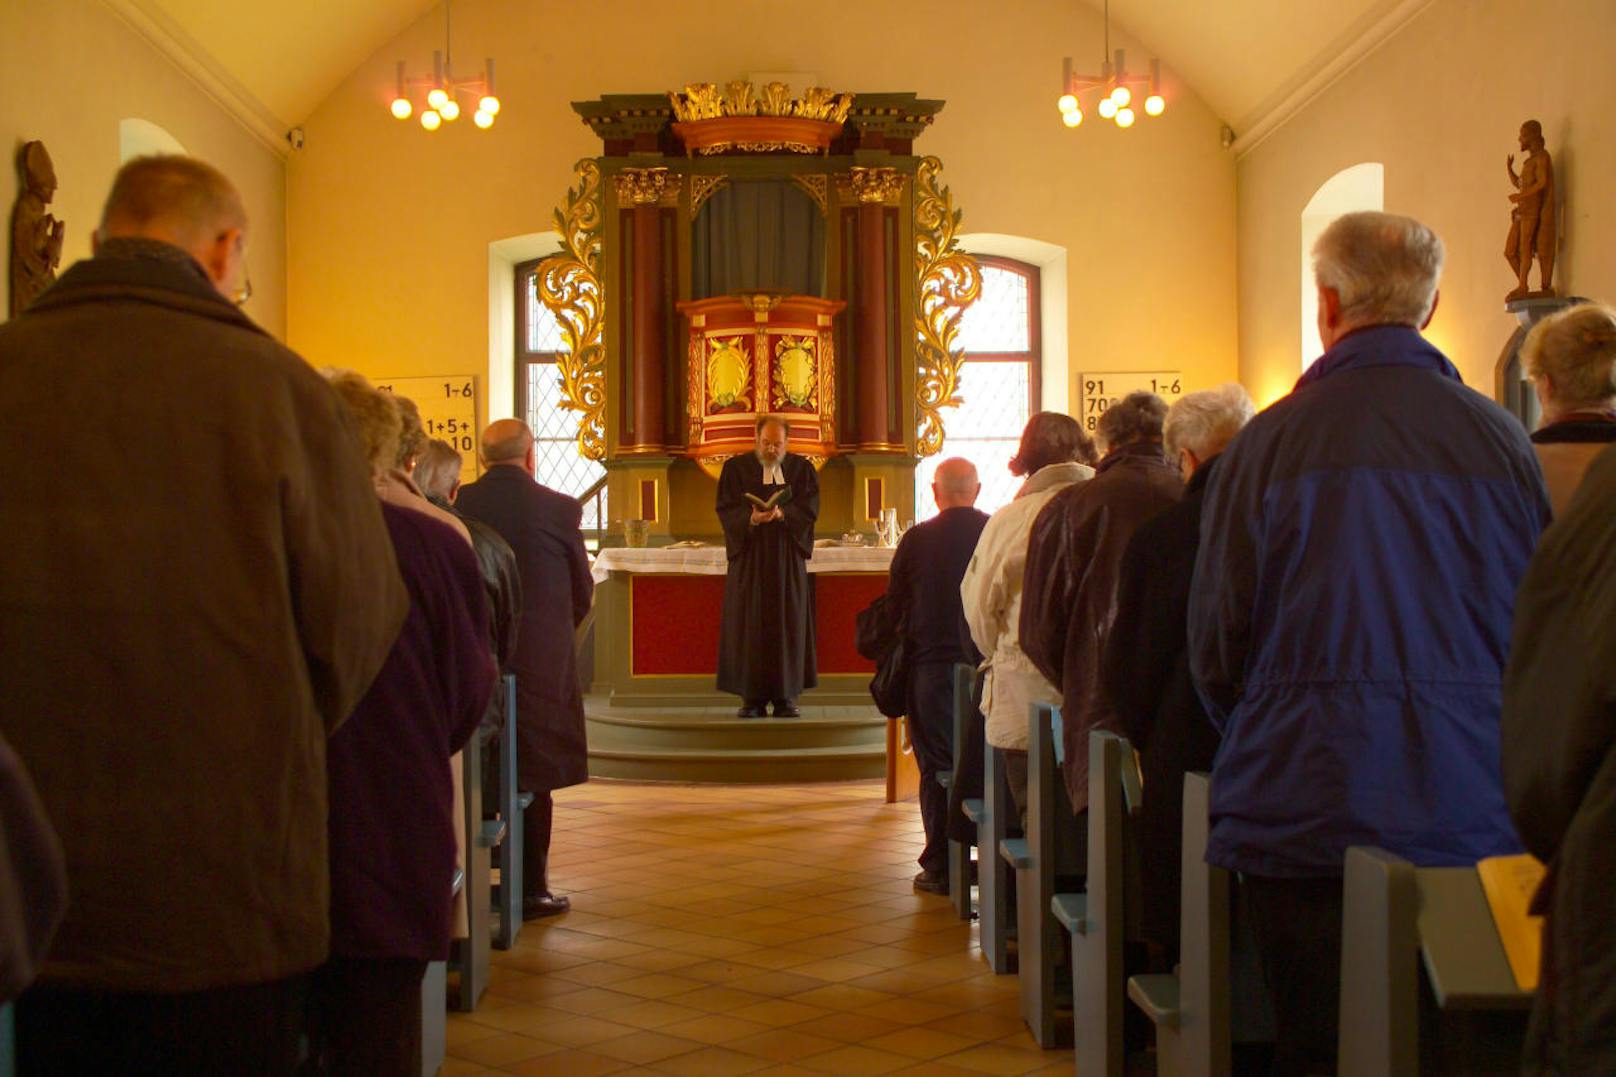 Laut amtlicher Statistik der Bischofskonferenz gibt es mit Stichtag 31. Dezember 2018 in Österreich 5,05 Millionen Katholiken.